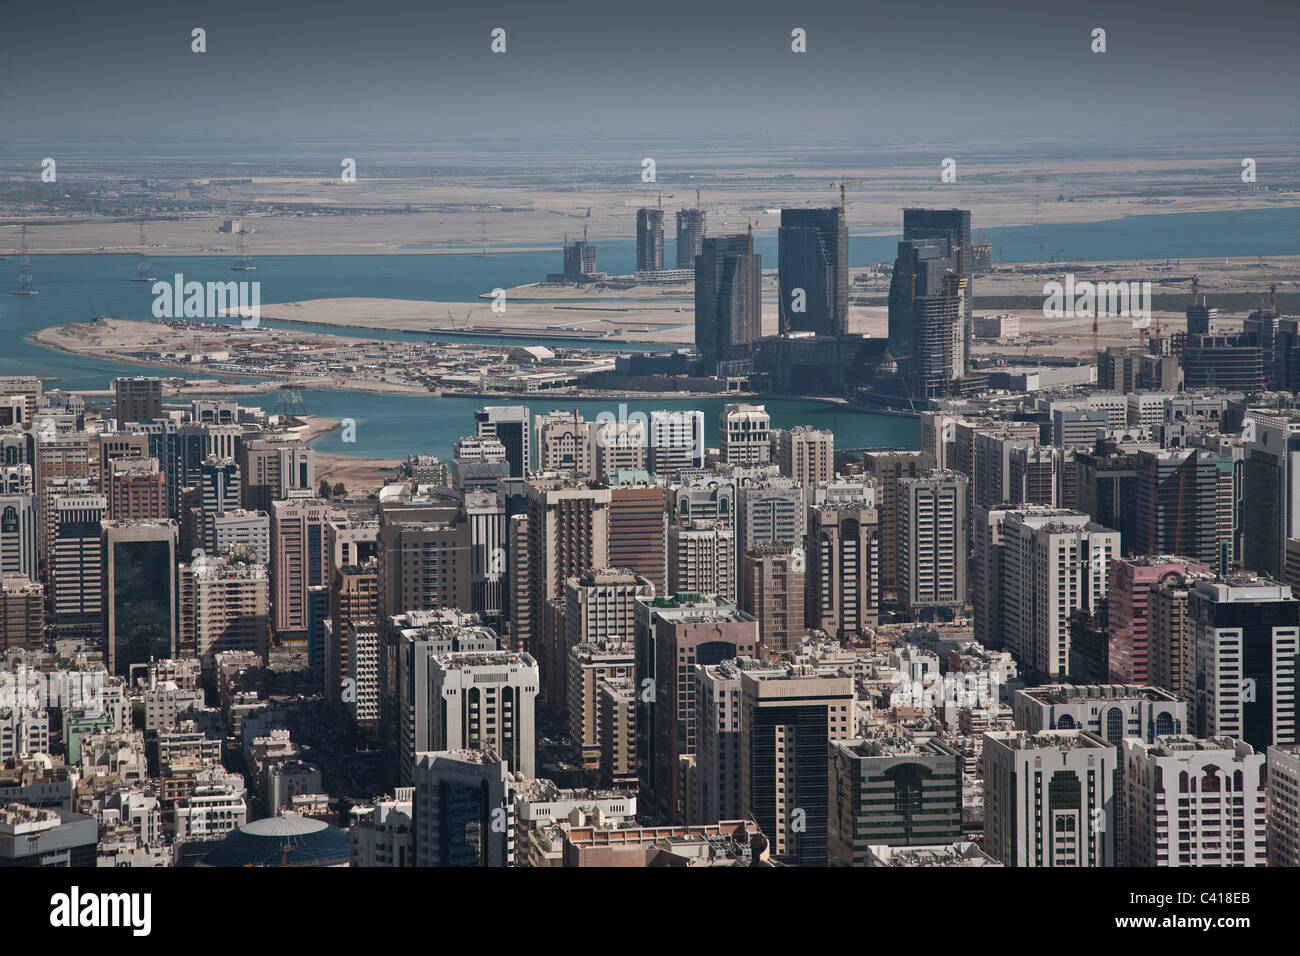 Abu Dhabi UAE United arab emirates skyline Stock Photo